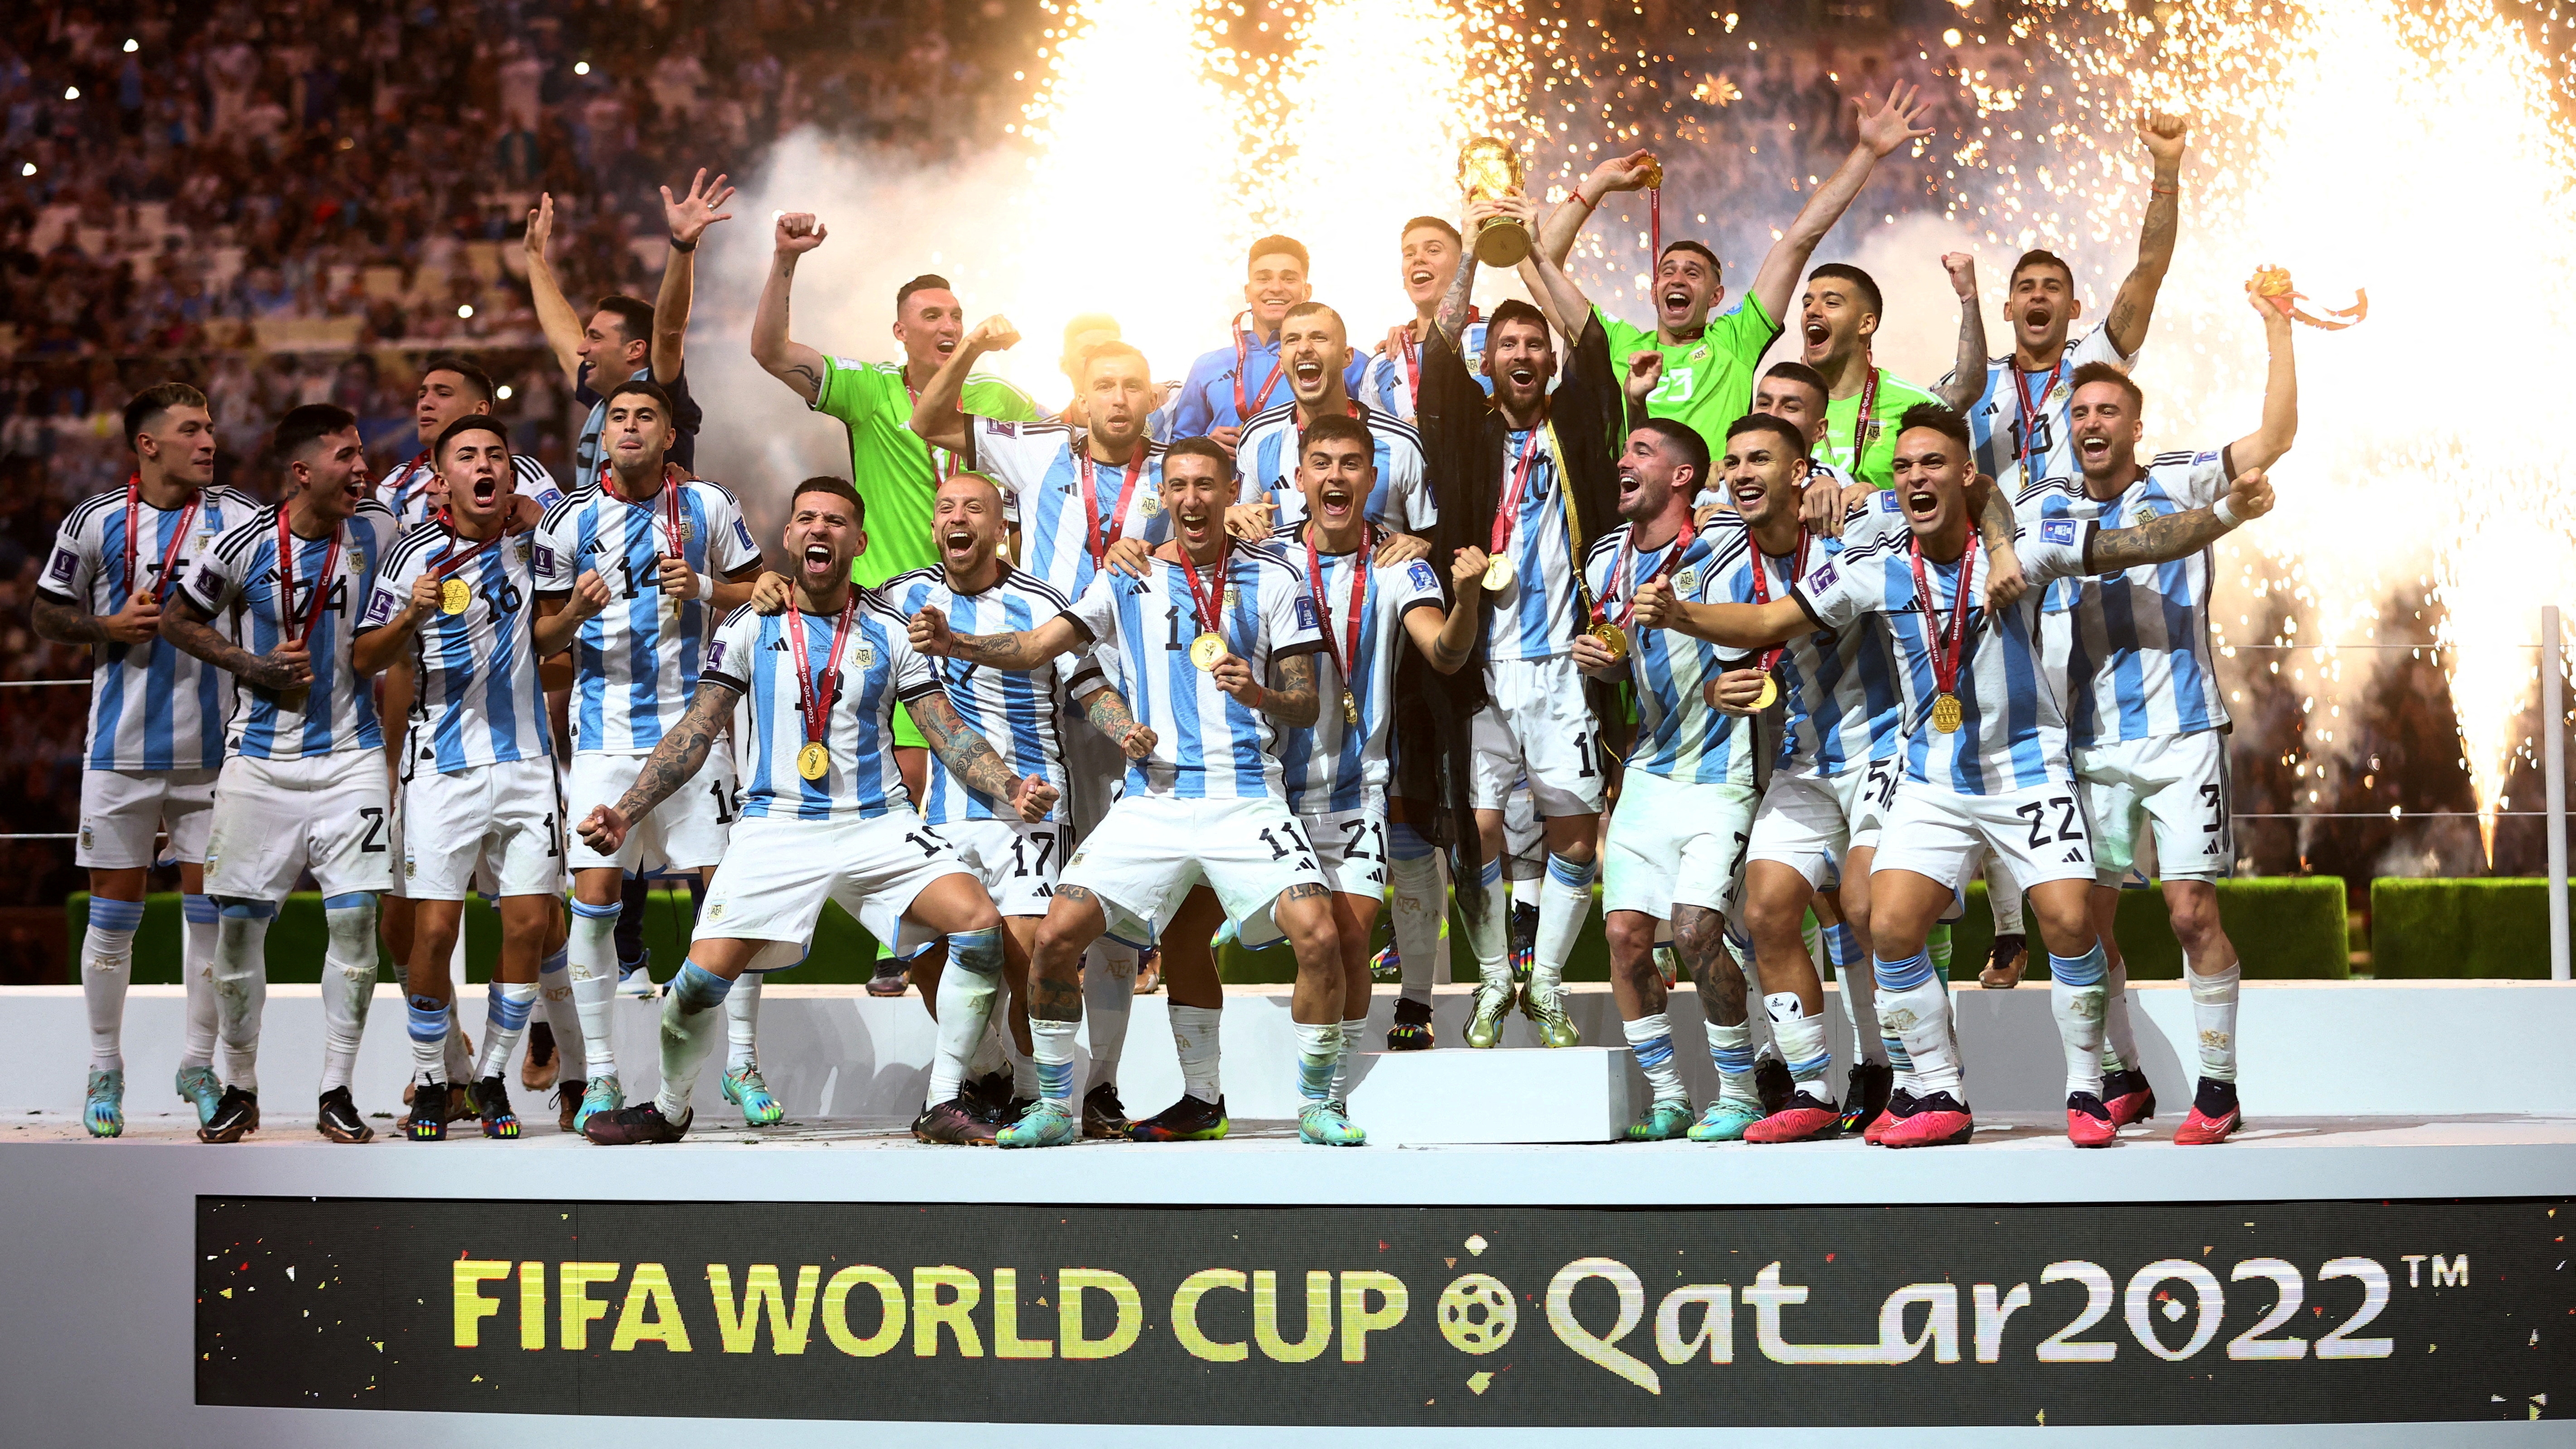 La Argentina de Lionel Messi ha sido el último equipo campeón en la Copa Mundial de la FIFA (REUTERS/Carl Recine)